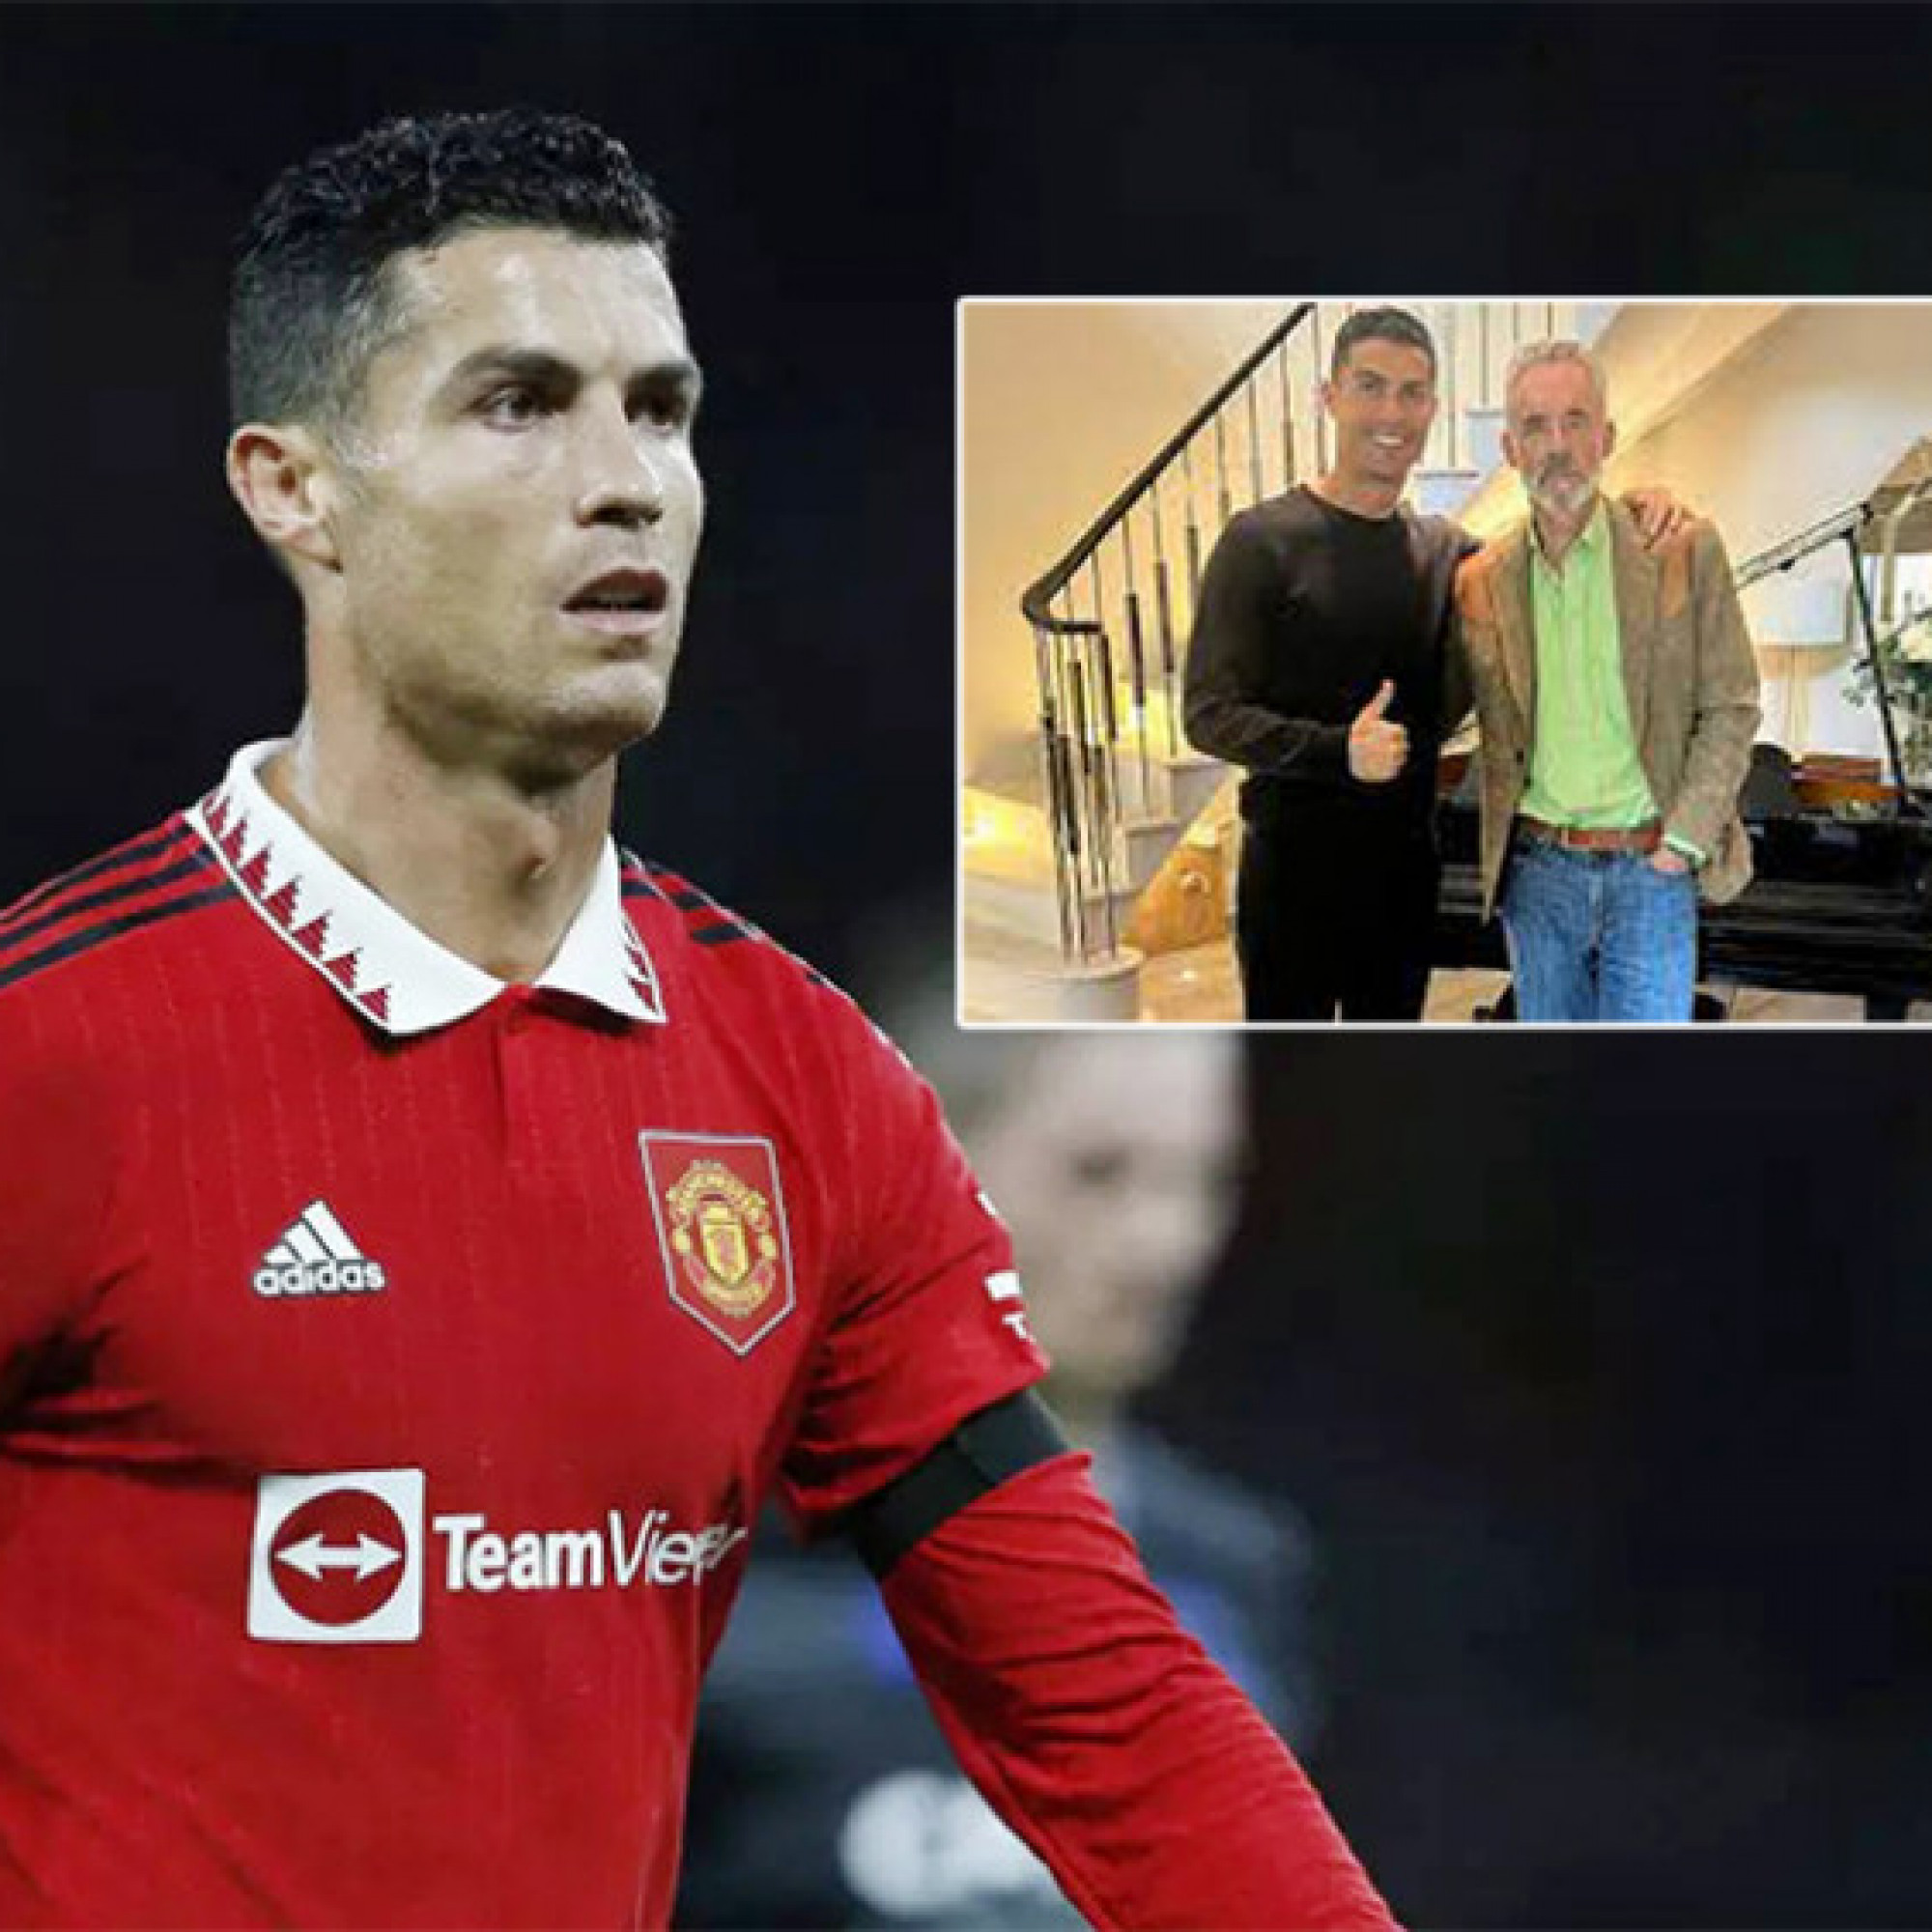  - Chấn động Ronaldo bị trầm cảm phải gặp bác sĩ, tình hình hiện ra sao?